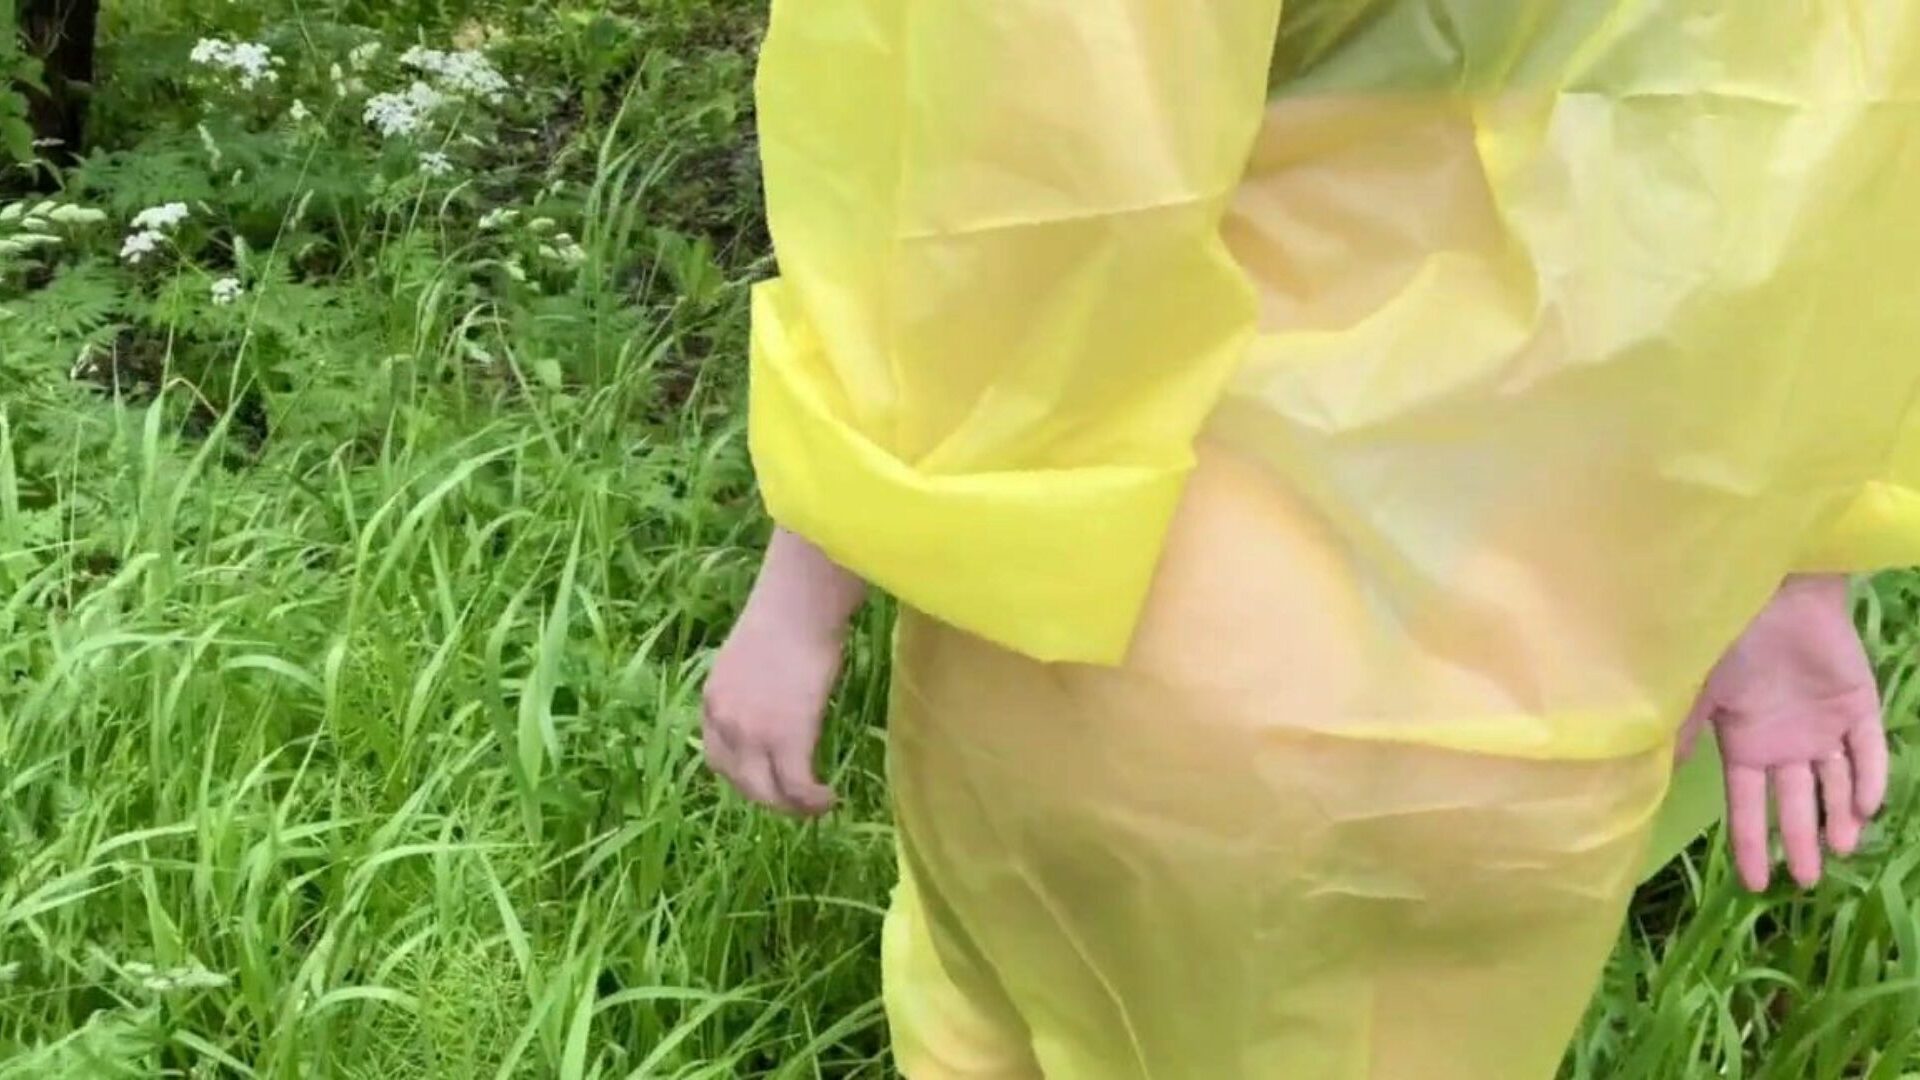 jente i regnfrakk blir knullet i skogen etter regn